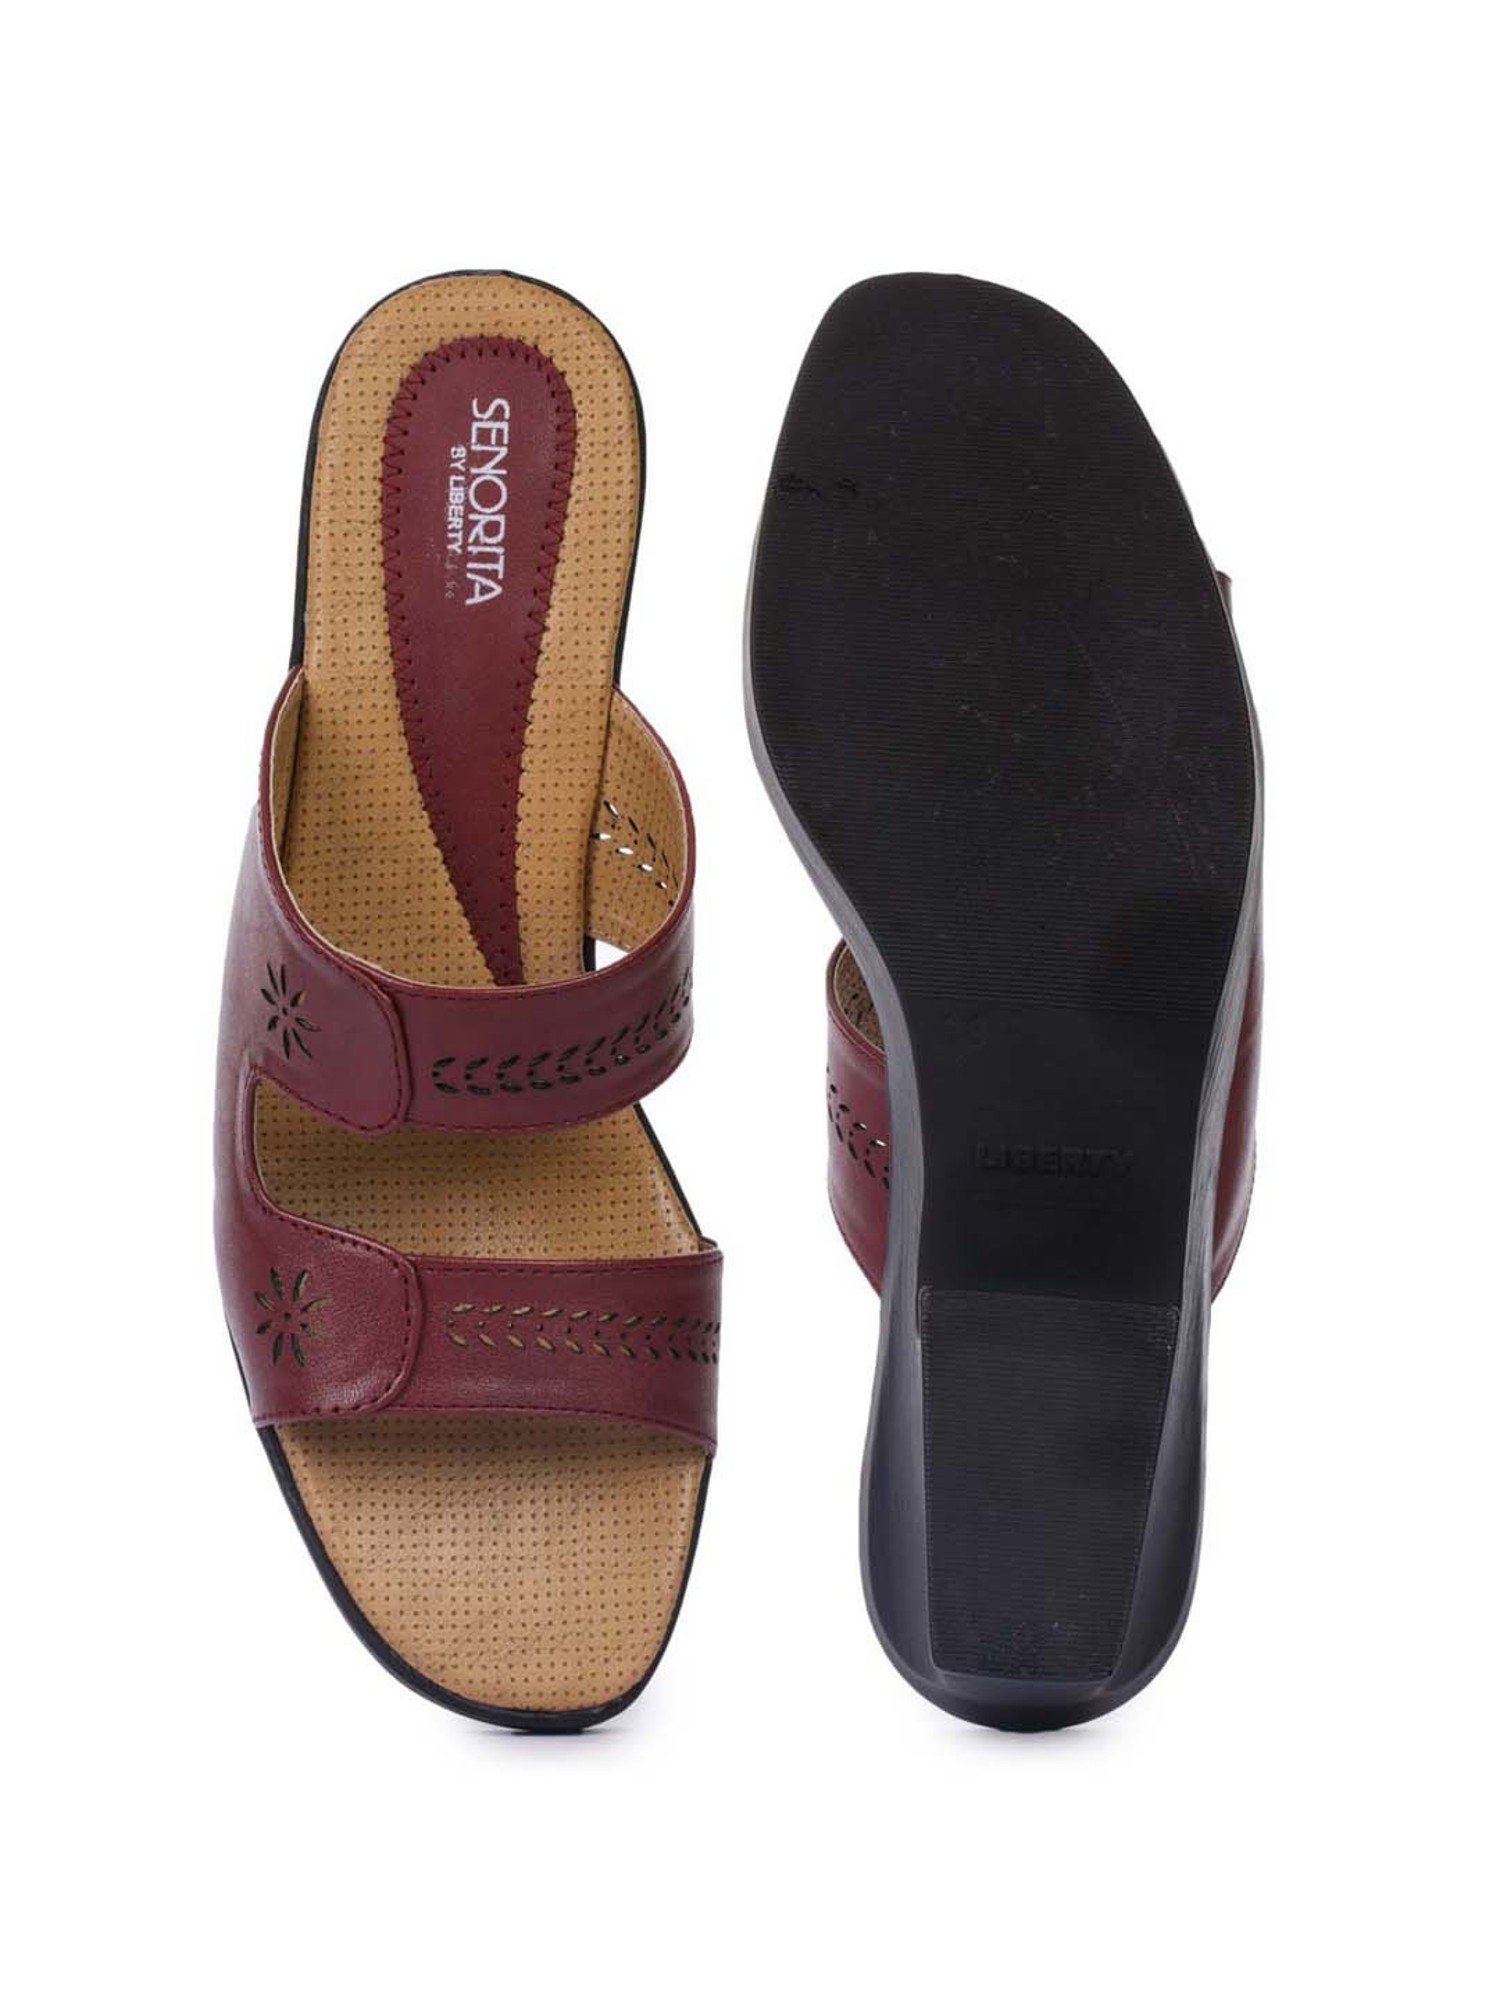 LIBERTY Women Brown Heels - Buy LIBERTY Women Brown Heels Online at Best  Price - Shop Online for Footwears in India | Flipkart.com